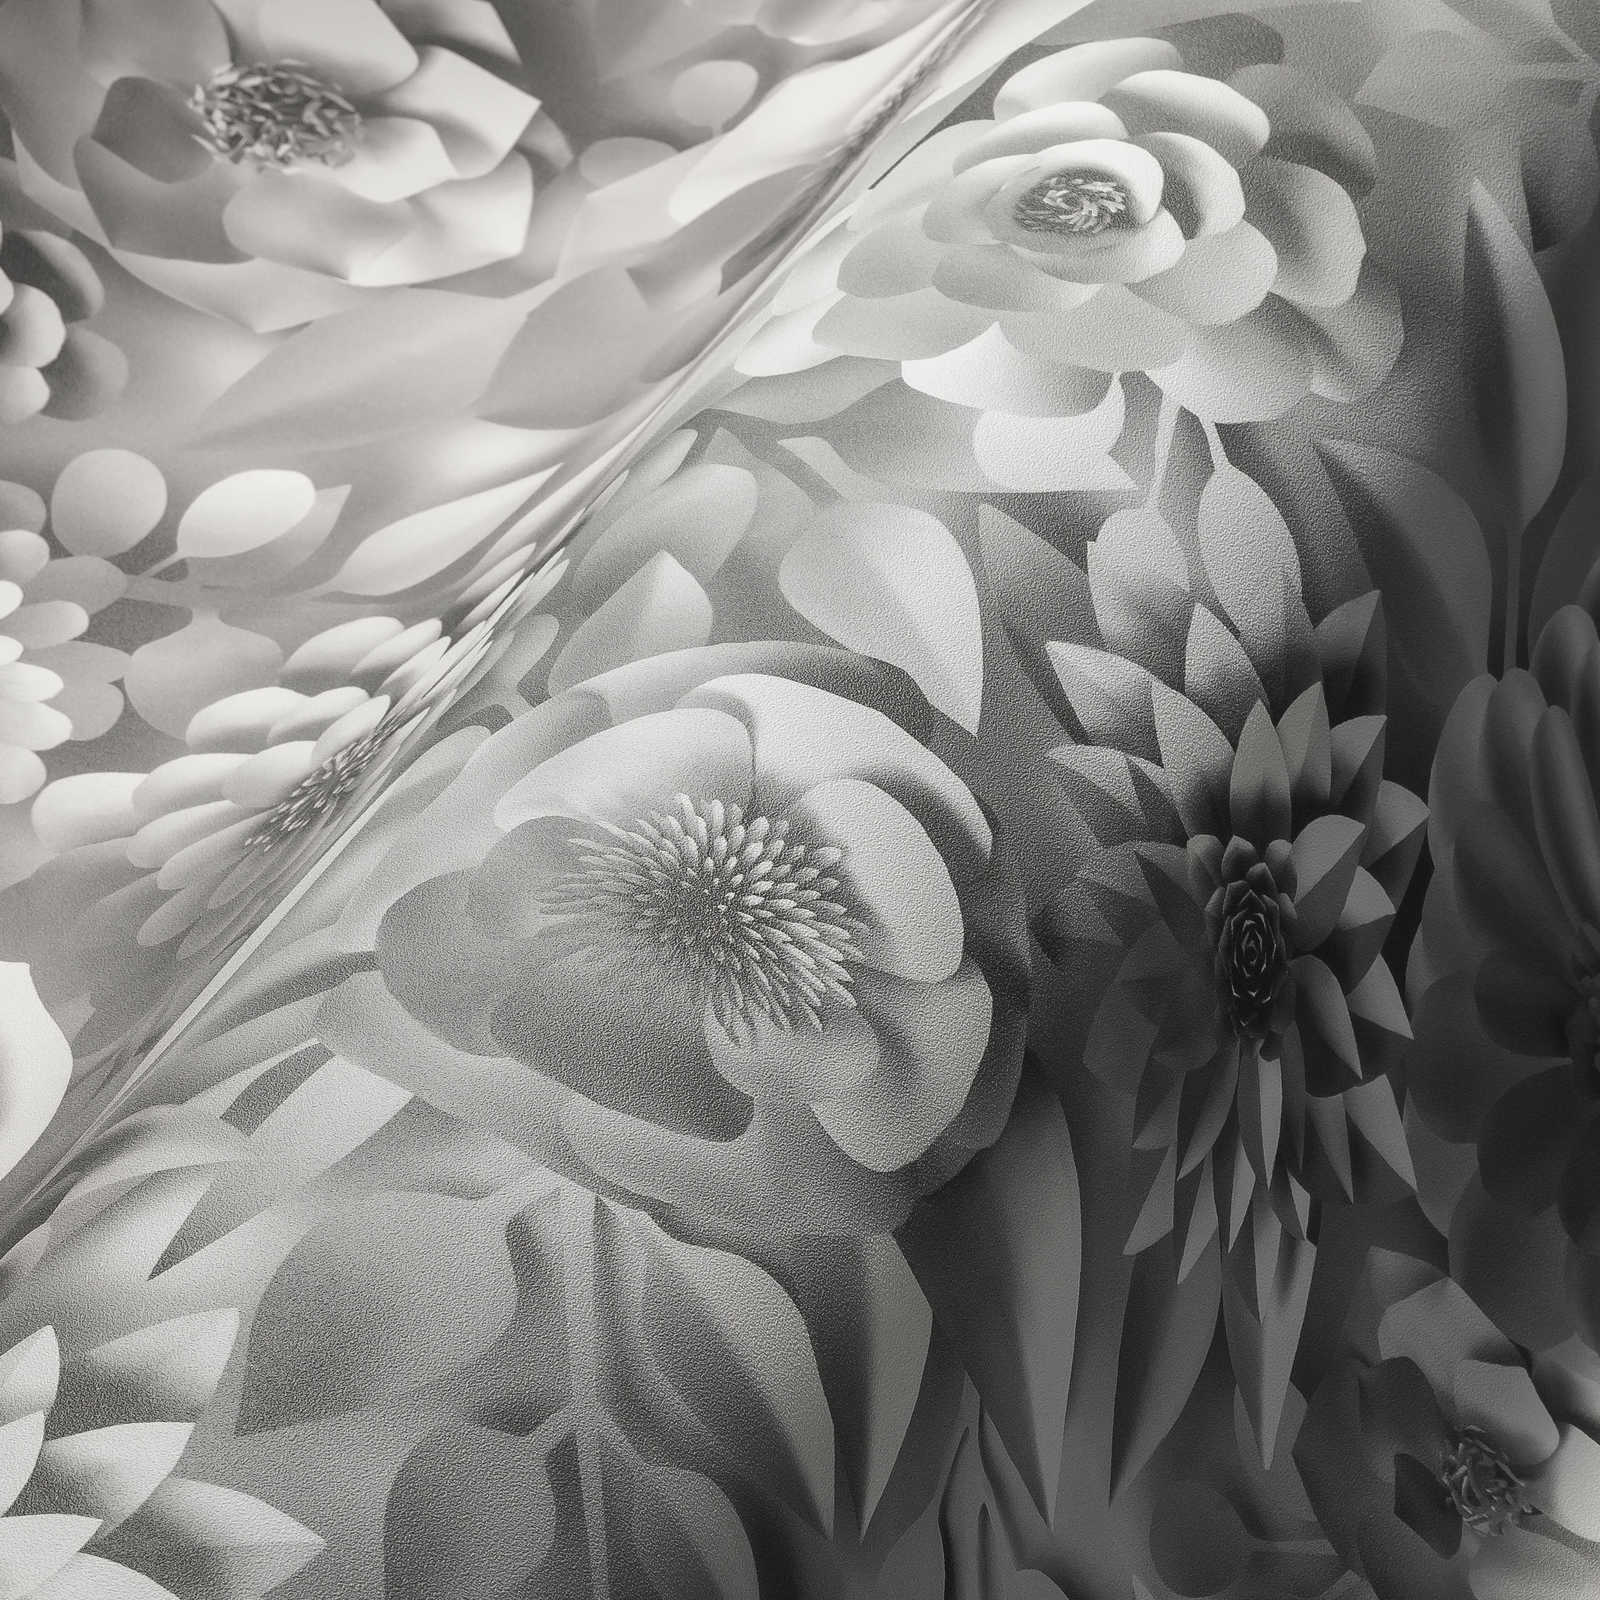             Carta da parati 3D con fiori di carta, motivo grafico floreale - Bianco
        